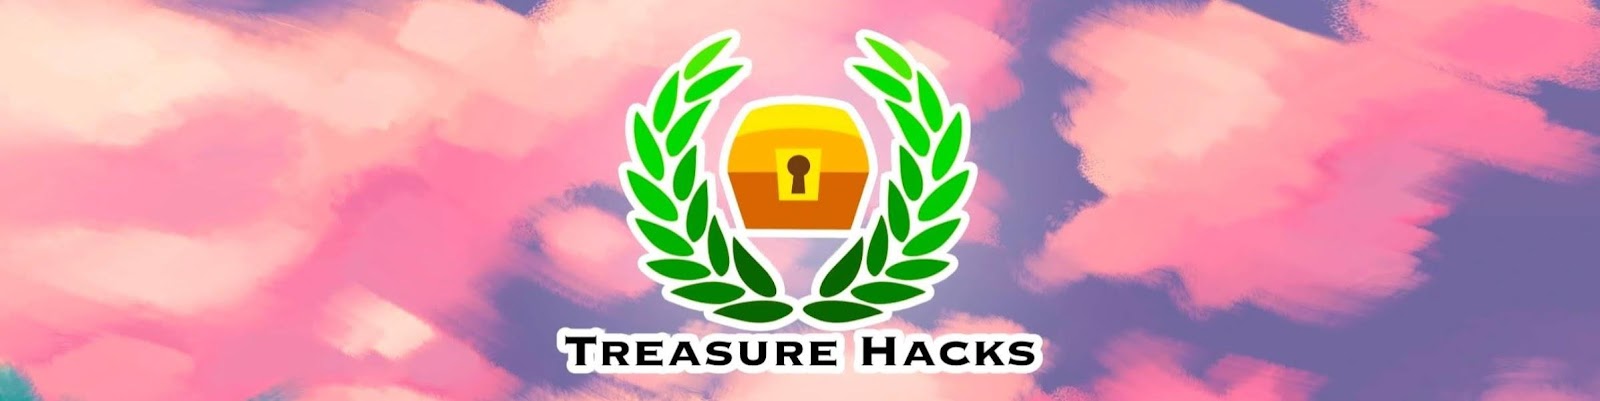 Treasure Hacks Banner